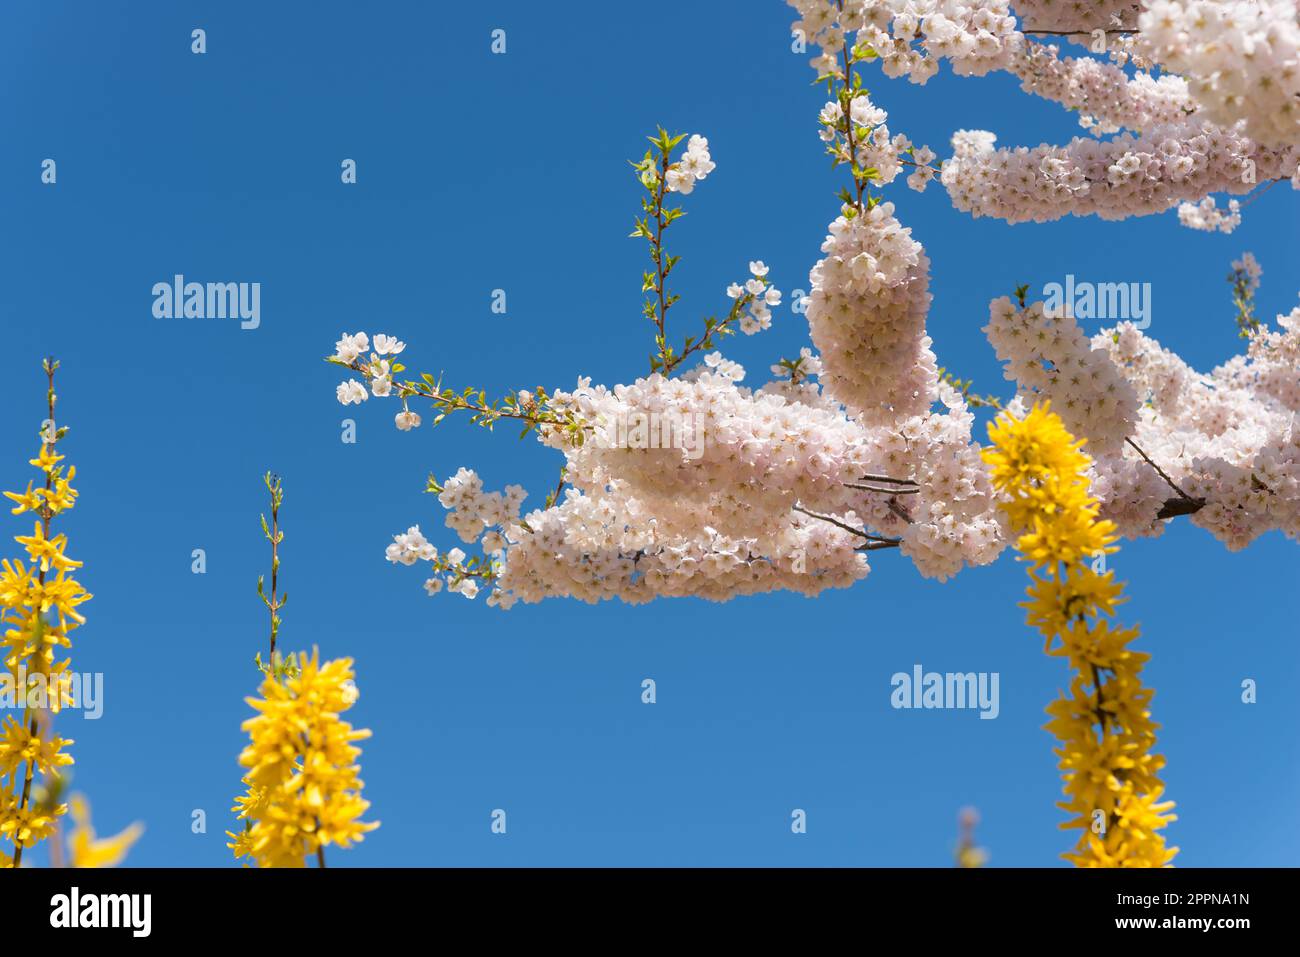 flores de cerezo y forsythia florece en un cielo azul claro profundo Foto de stock